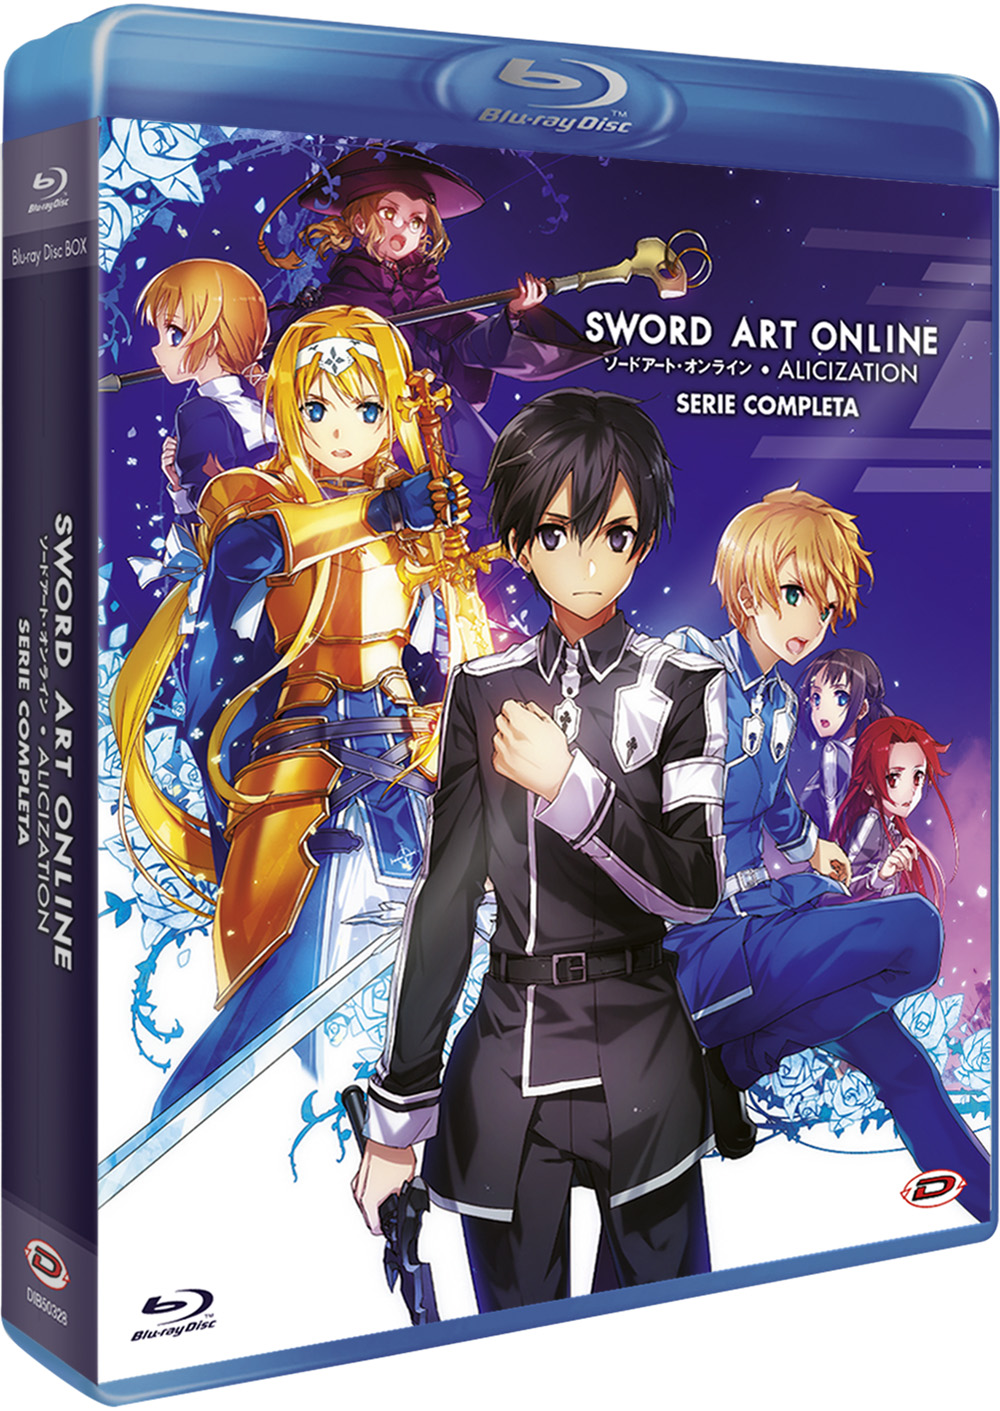 Blu-Ray Sword Art Online III Alicization - The Complete Series (Eps 01-24) (4 Blu-Ray) NUOVO SIGILLATO, EDIZIONE DEL 02/11/2022 SUBITO DISPONIBILE